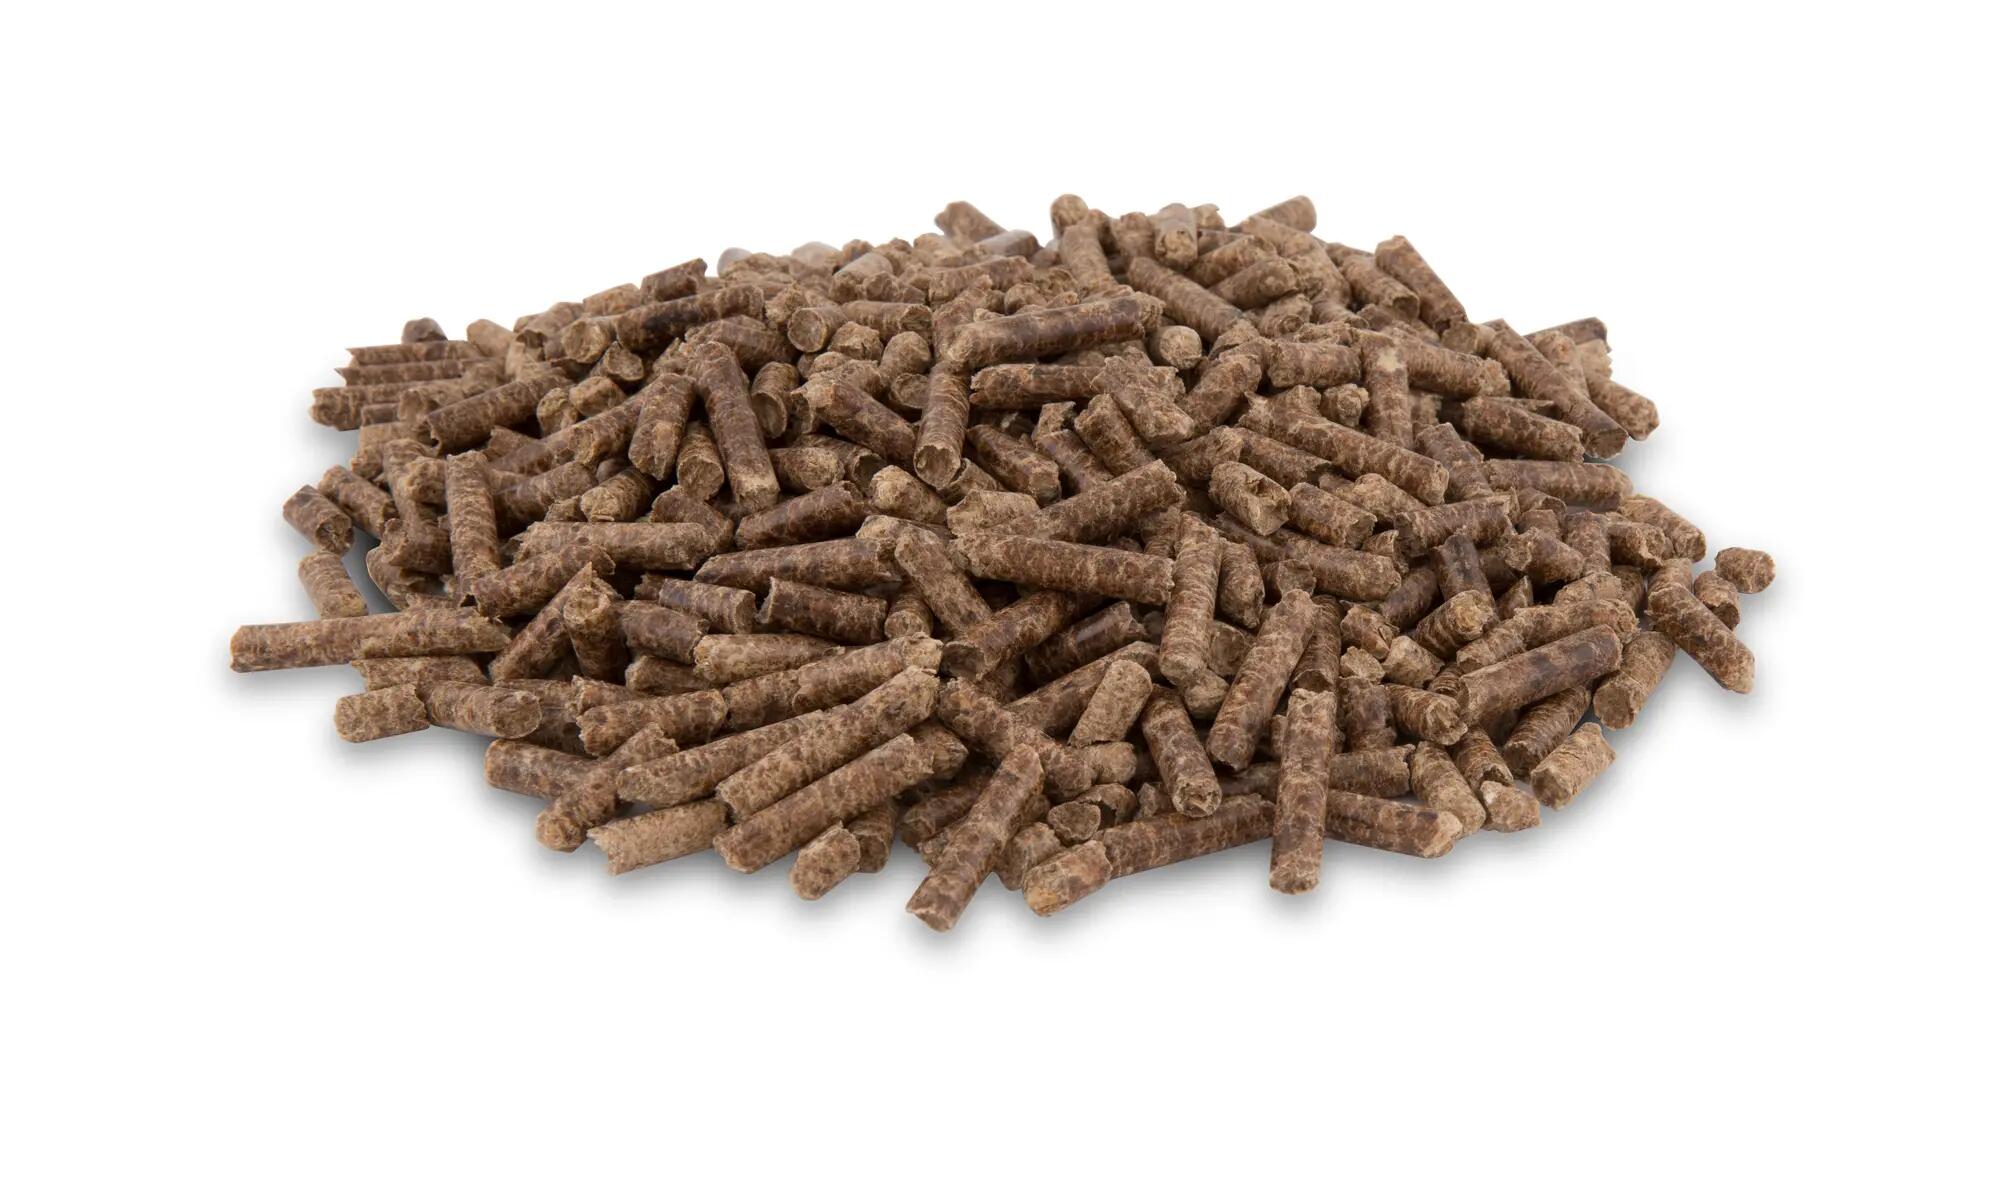 Madera para ahumar pellet manzano broil king 9 kg